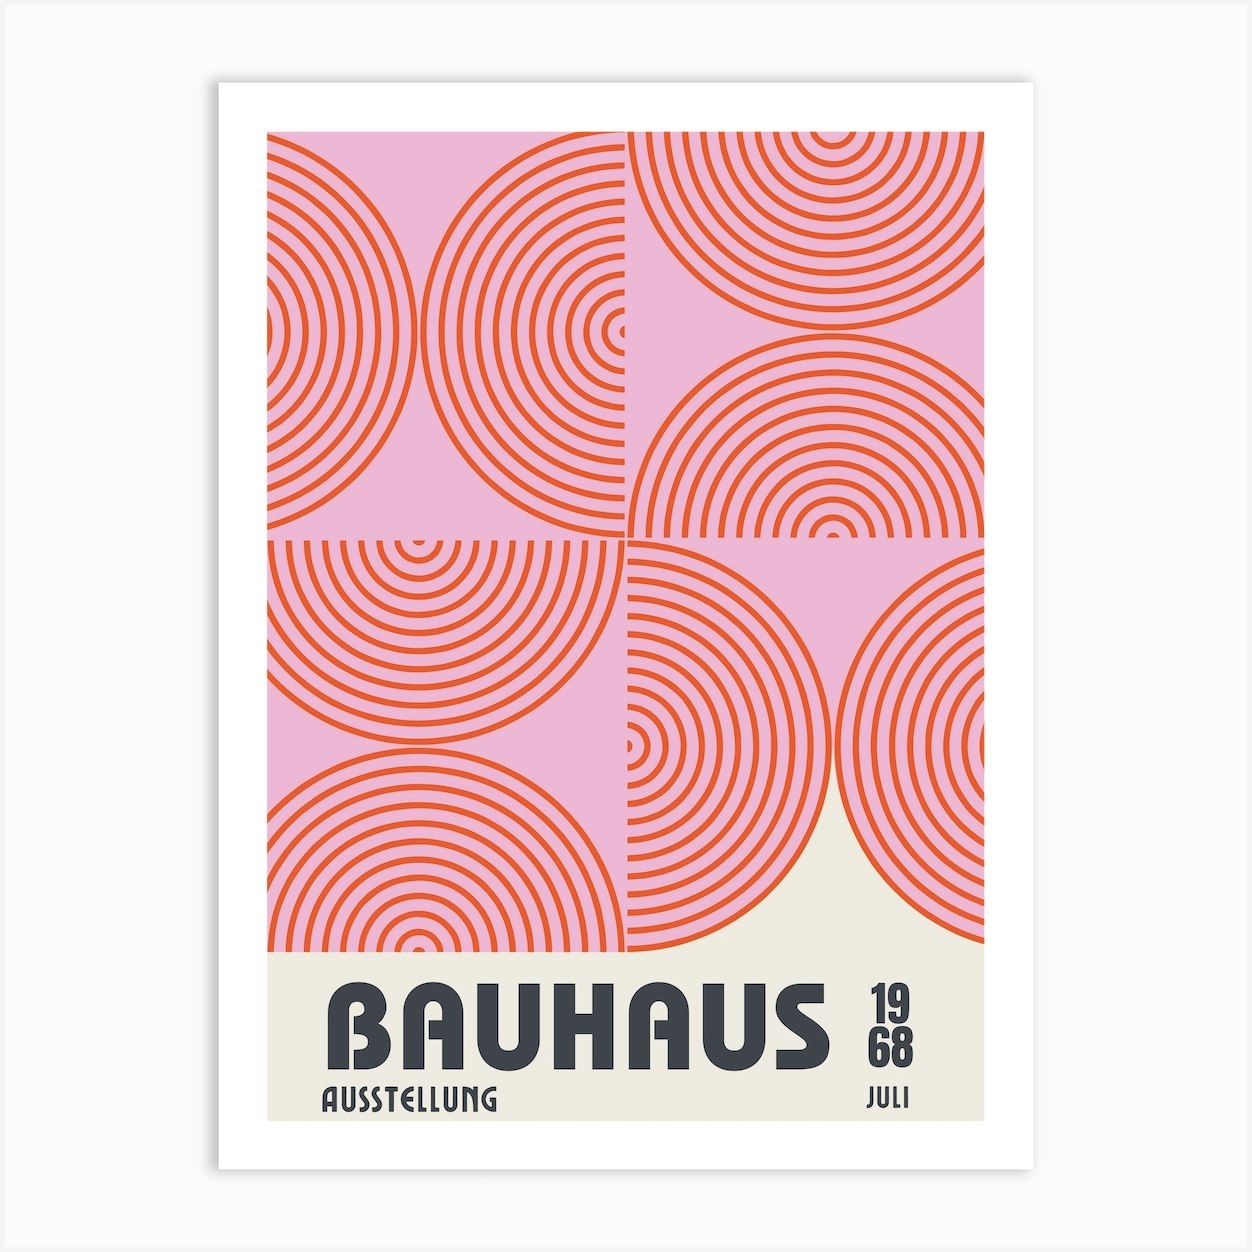 Bauhaus Exhibition Poster, Ausstellung Design Print, Pink & Orange